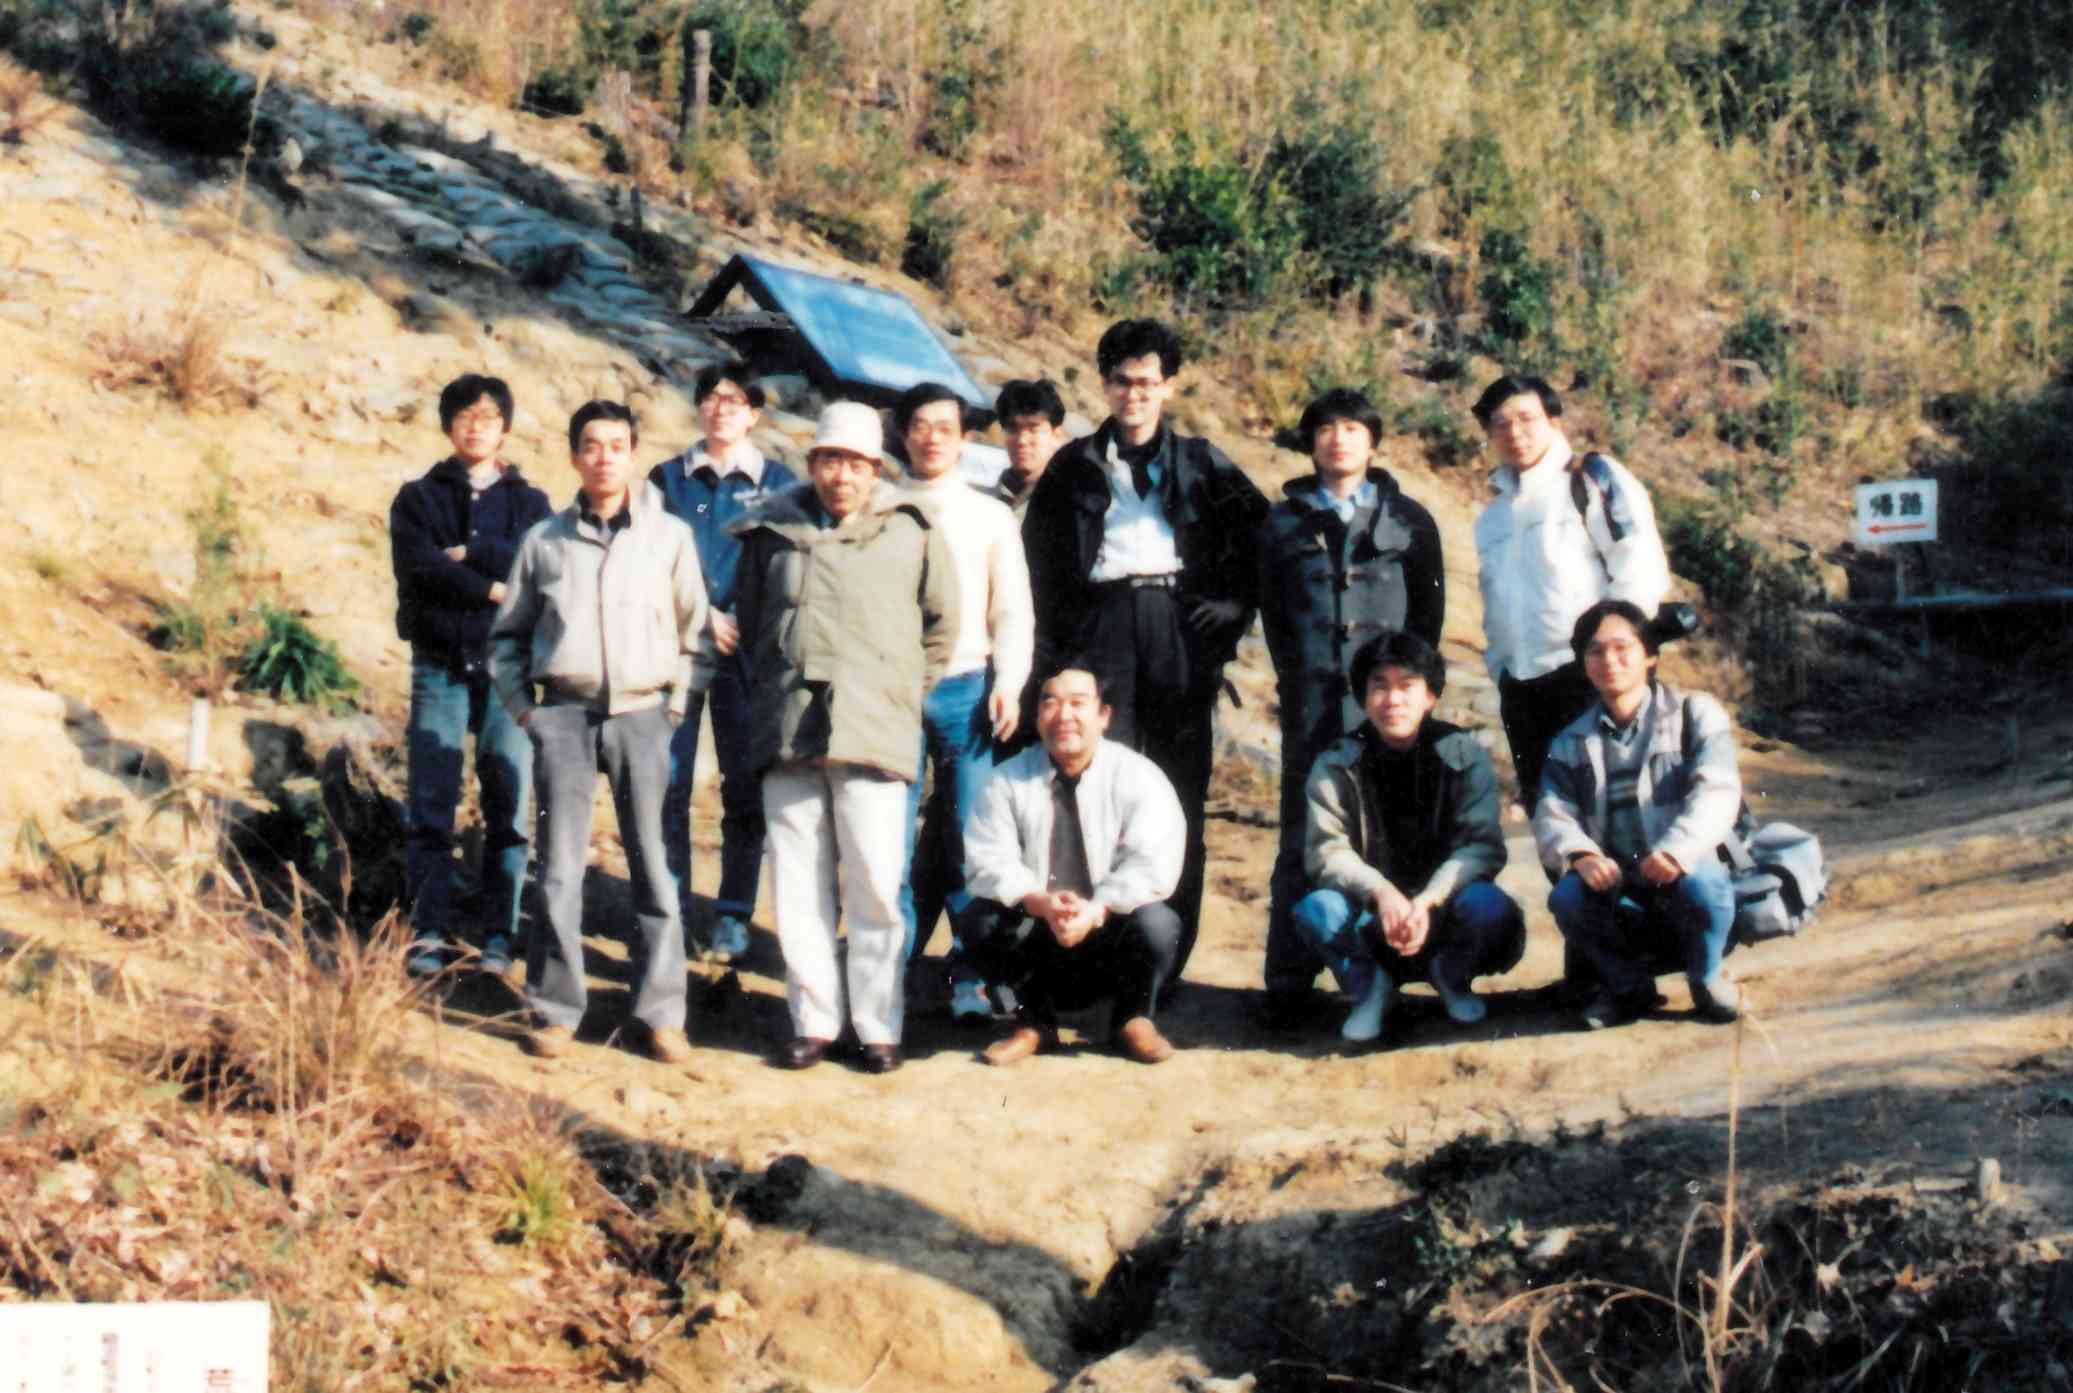 島根県荒神谷遺跡で。前列左から2人目潮見先生、3人目河瀬先生、後列右端が李さん